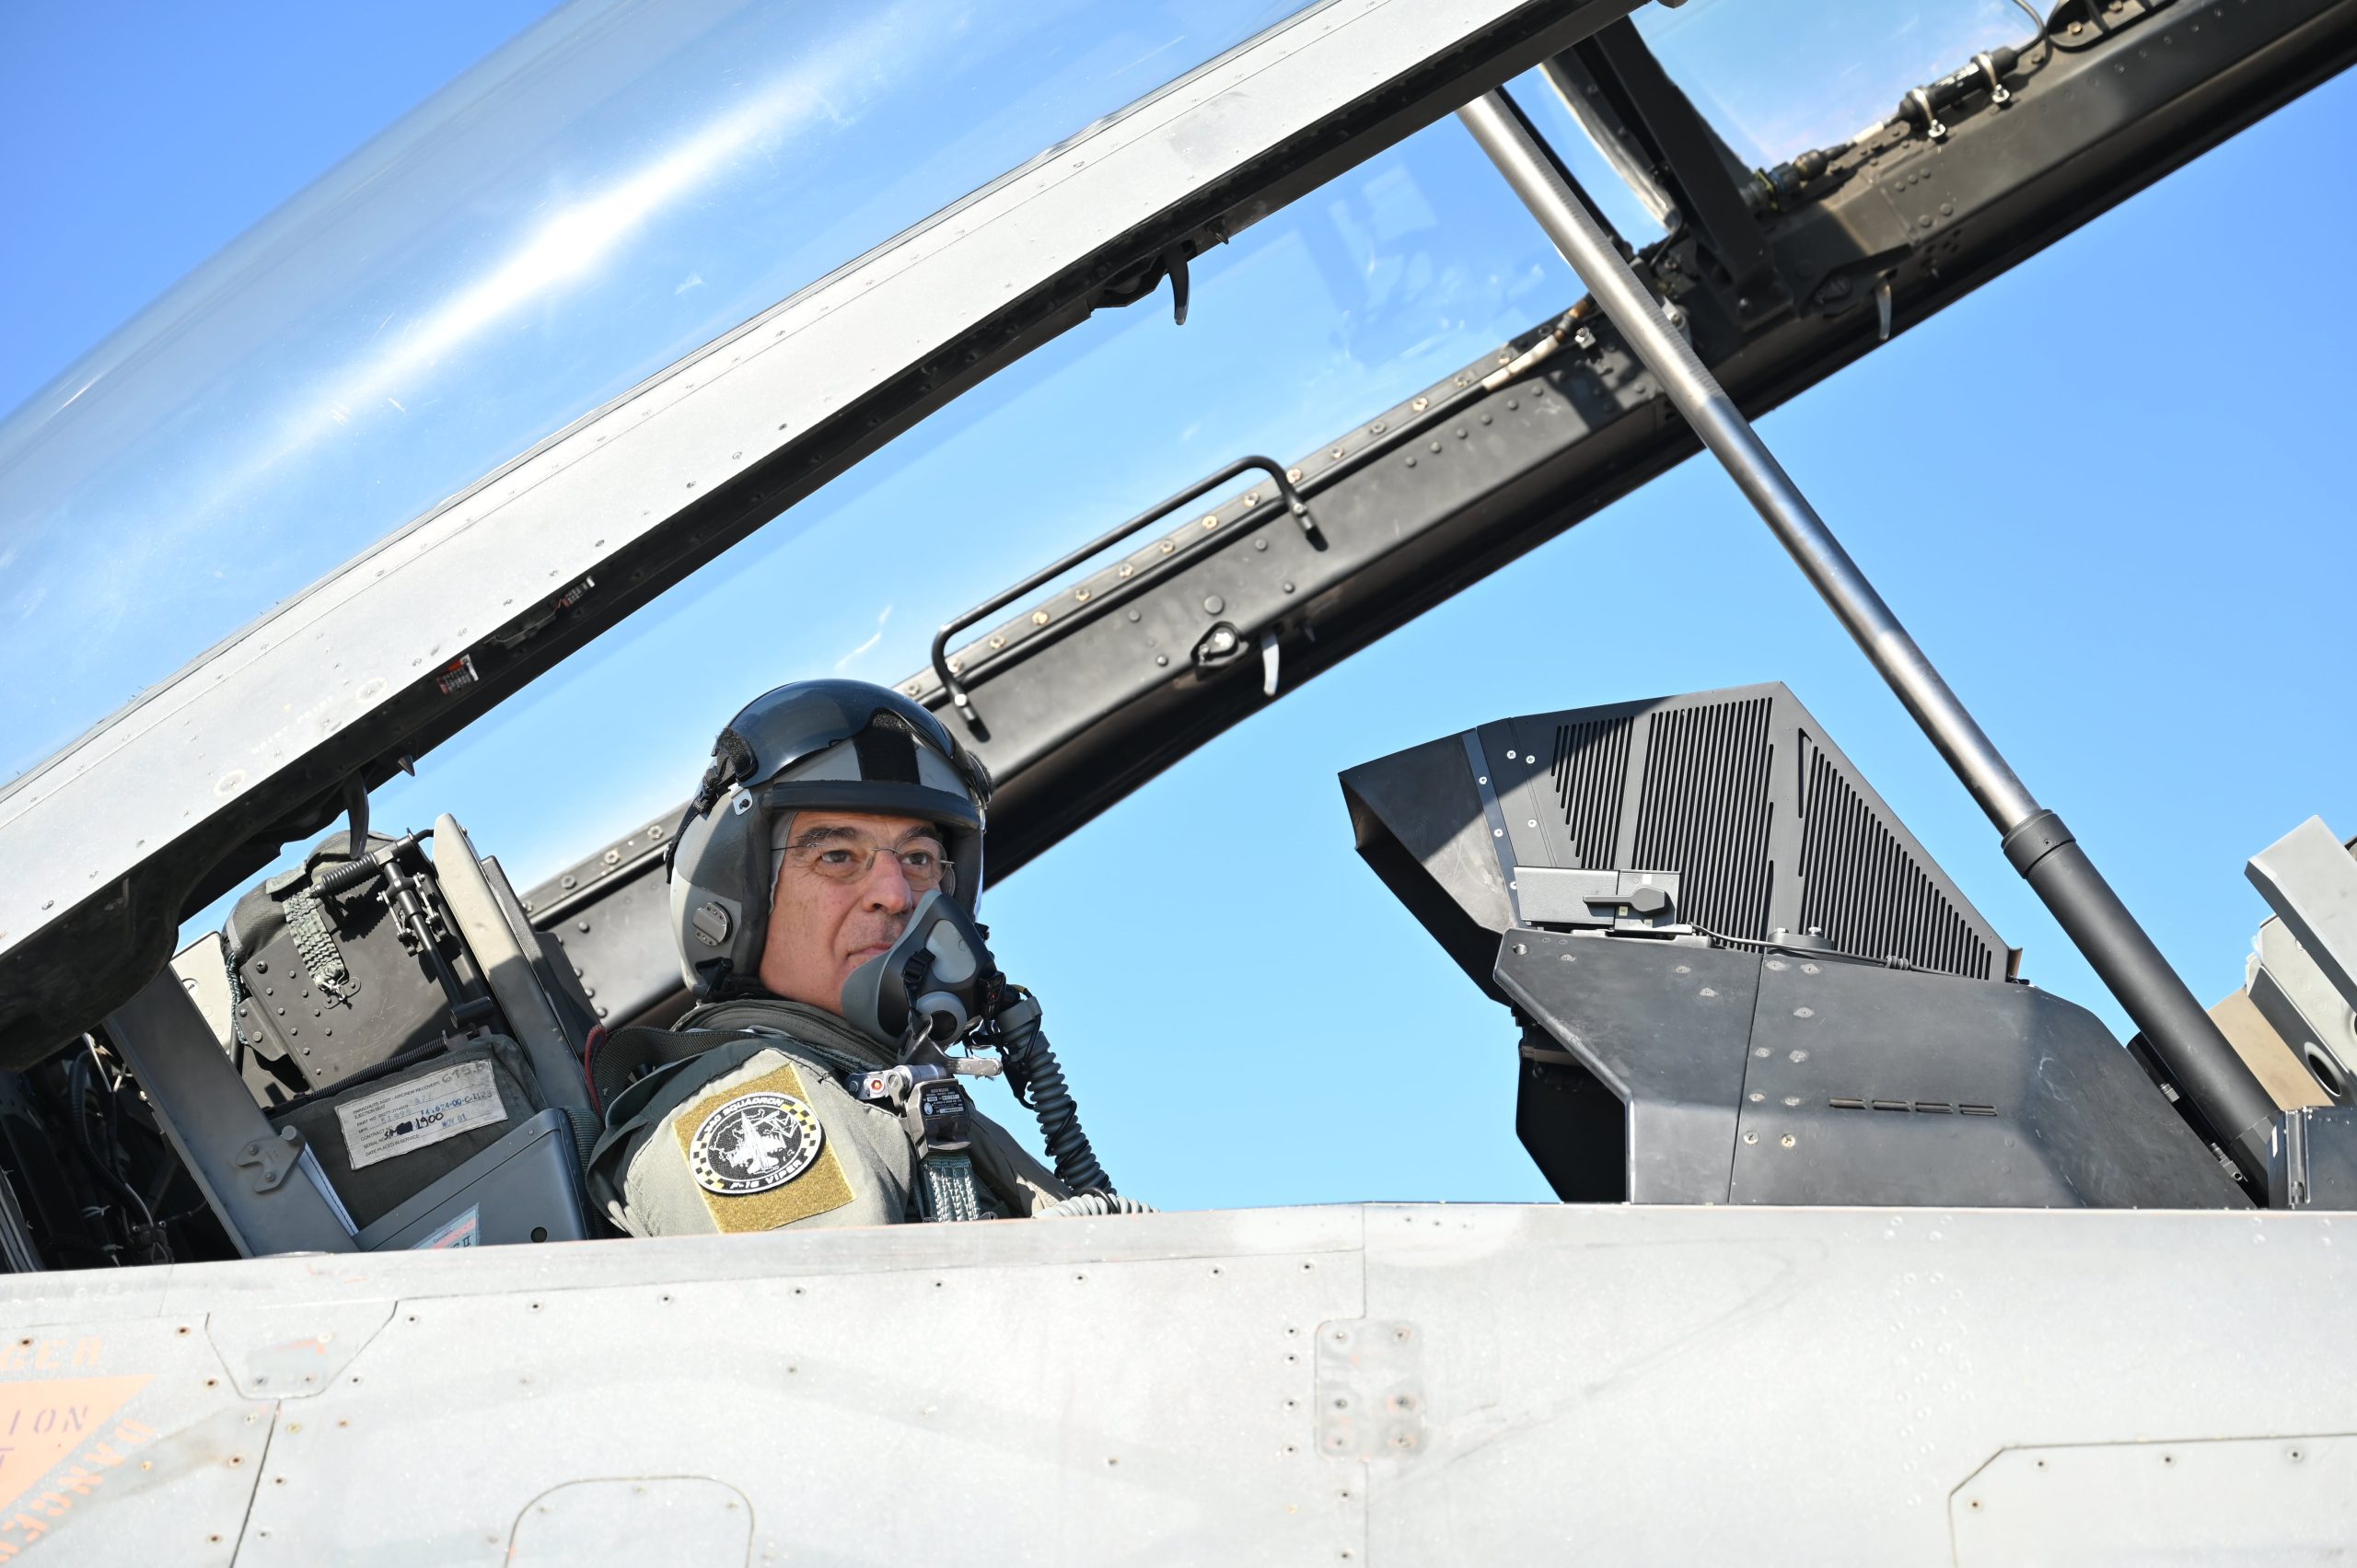 Πτήση με F-16 Viper για τον ΥΕΘΑ που έχει να λύσει ένα θέμα με το πρόγραμμα του εκσυγχρονισμού